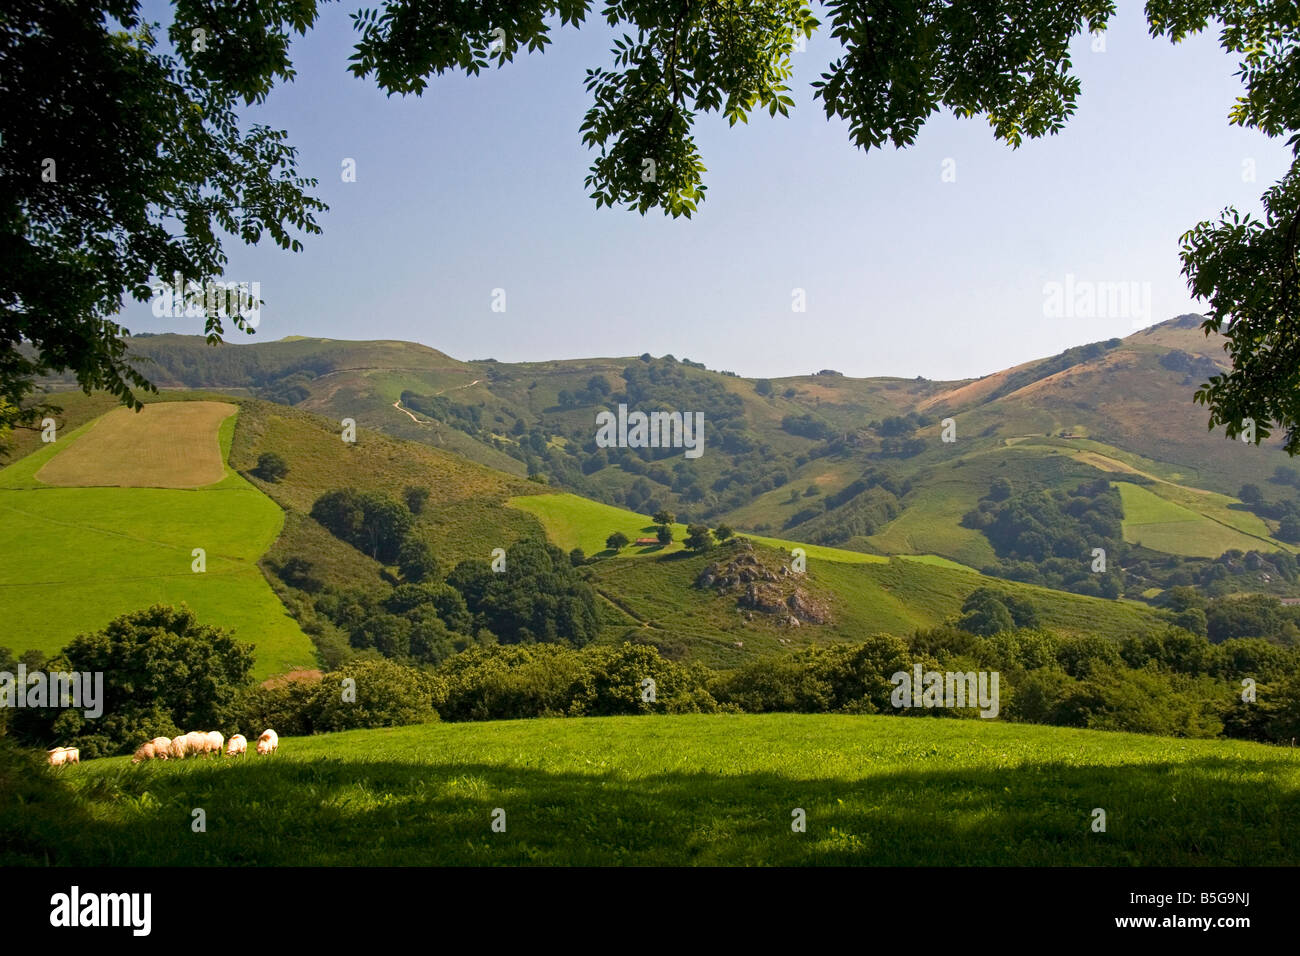 Schafe grasen auf ländlichen Ackerflächen im Baztan-Tal von Navarra im Norden Spaniens Stockfoto